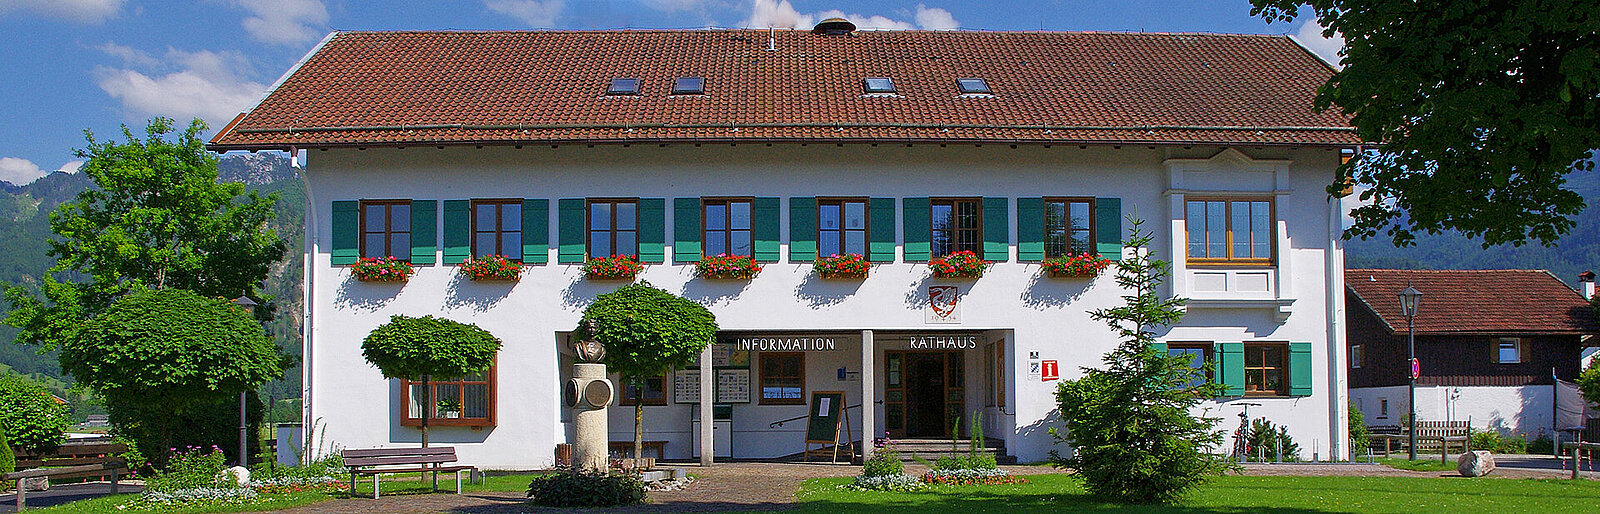 Rathaus der Gemeinde Schwangau im Landkreis Ostallgäu in Bayern